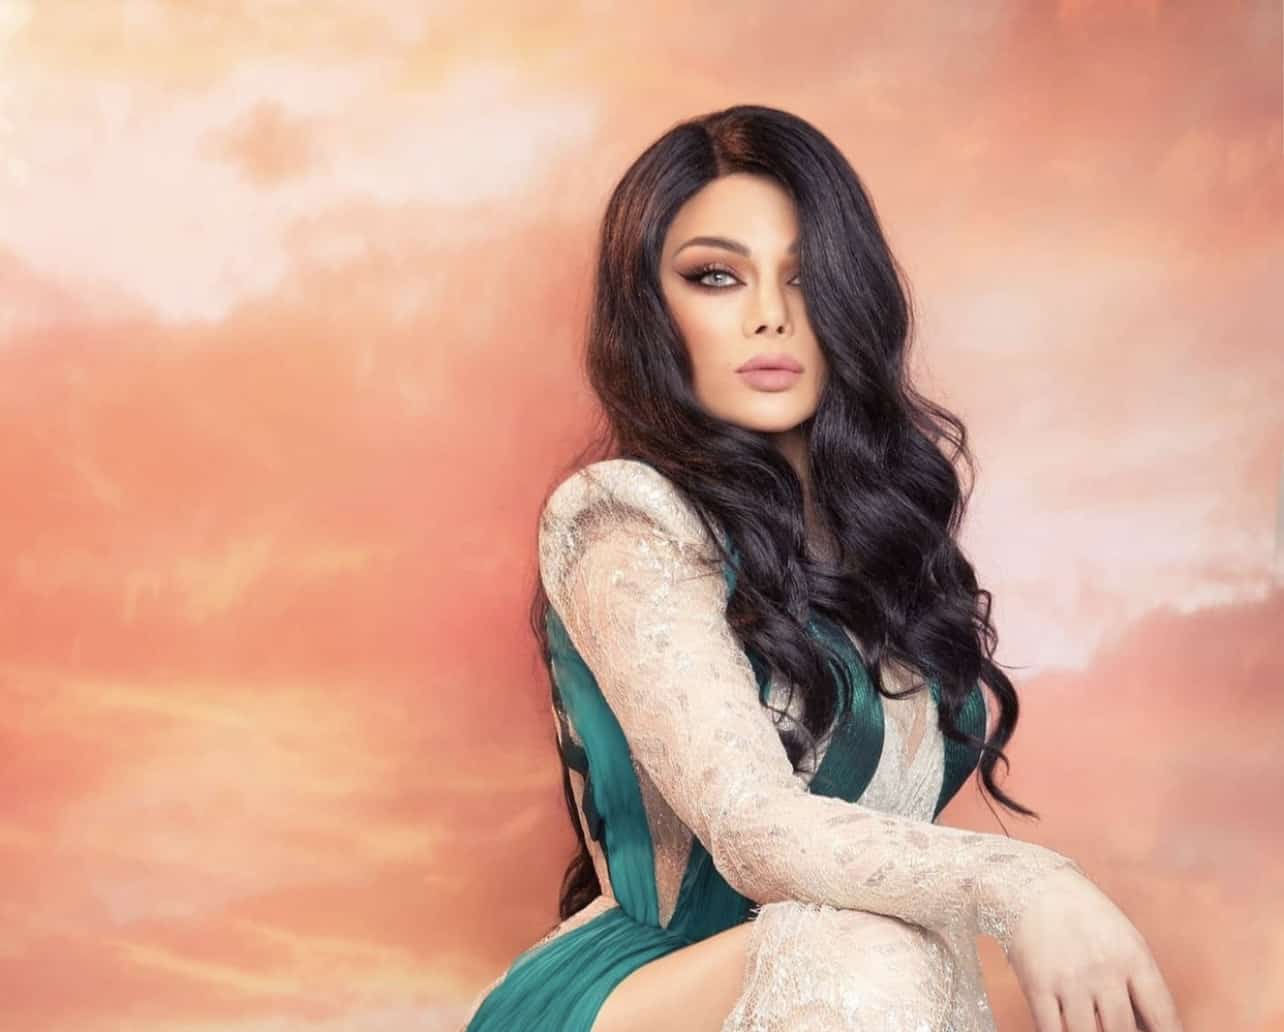 Haifa Wehbe leder trenden med en egyptisk artist og en fredløs sang